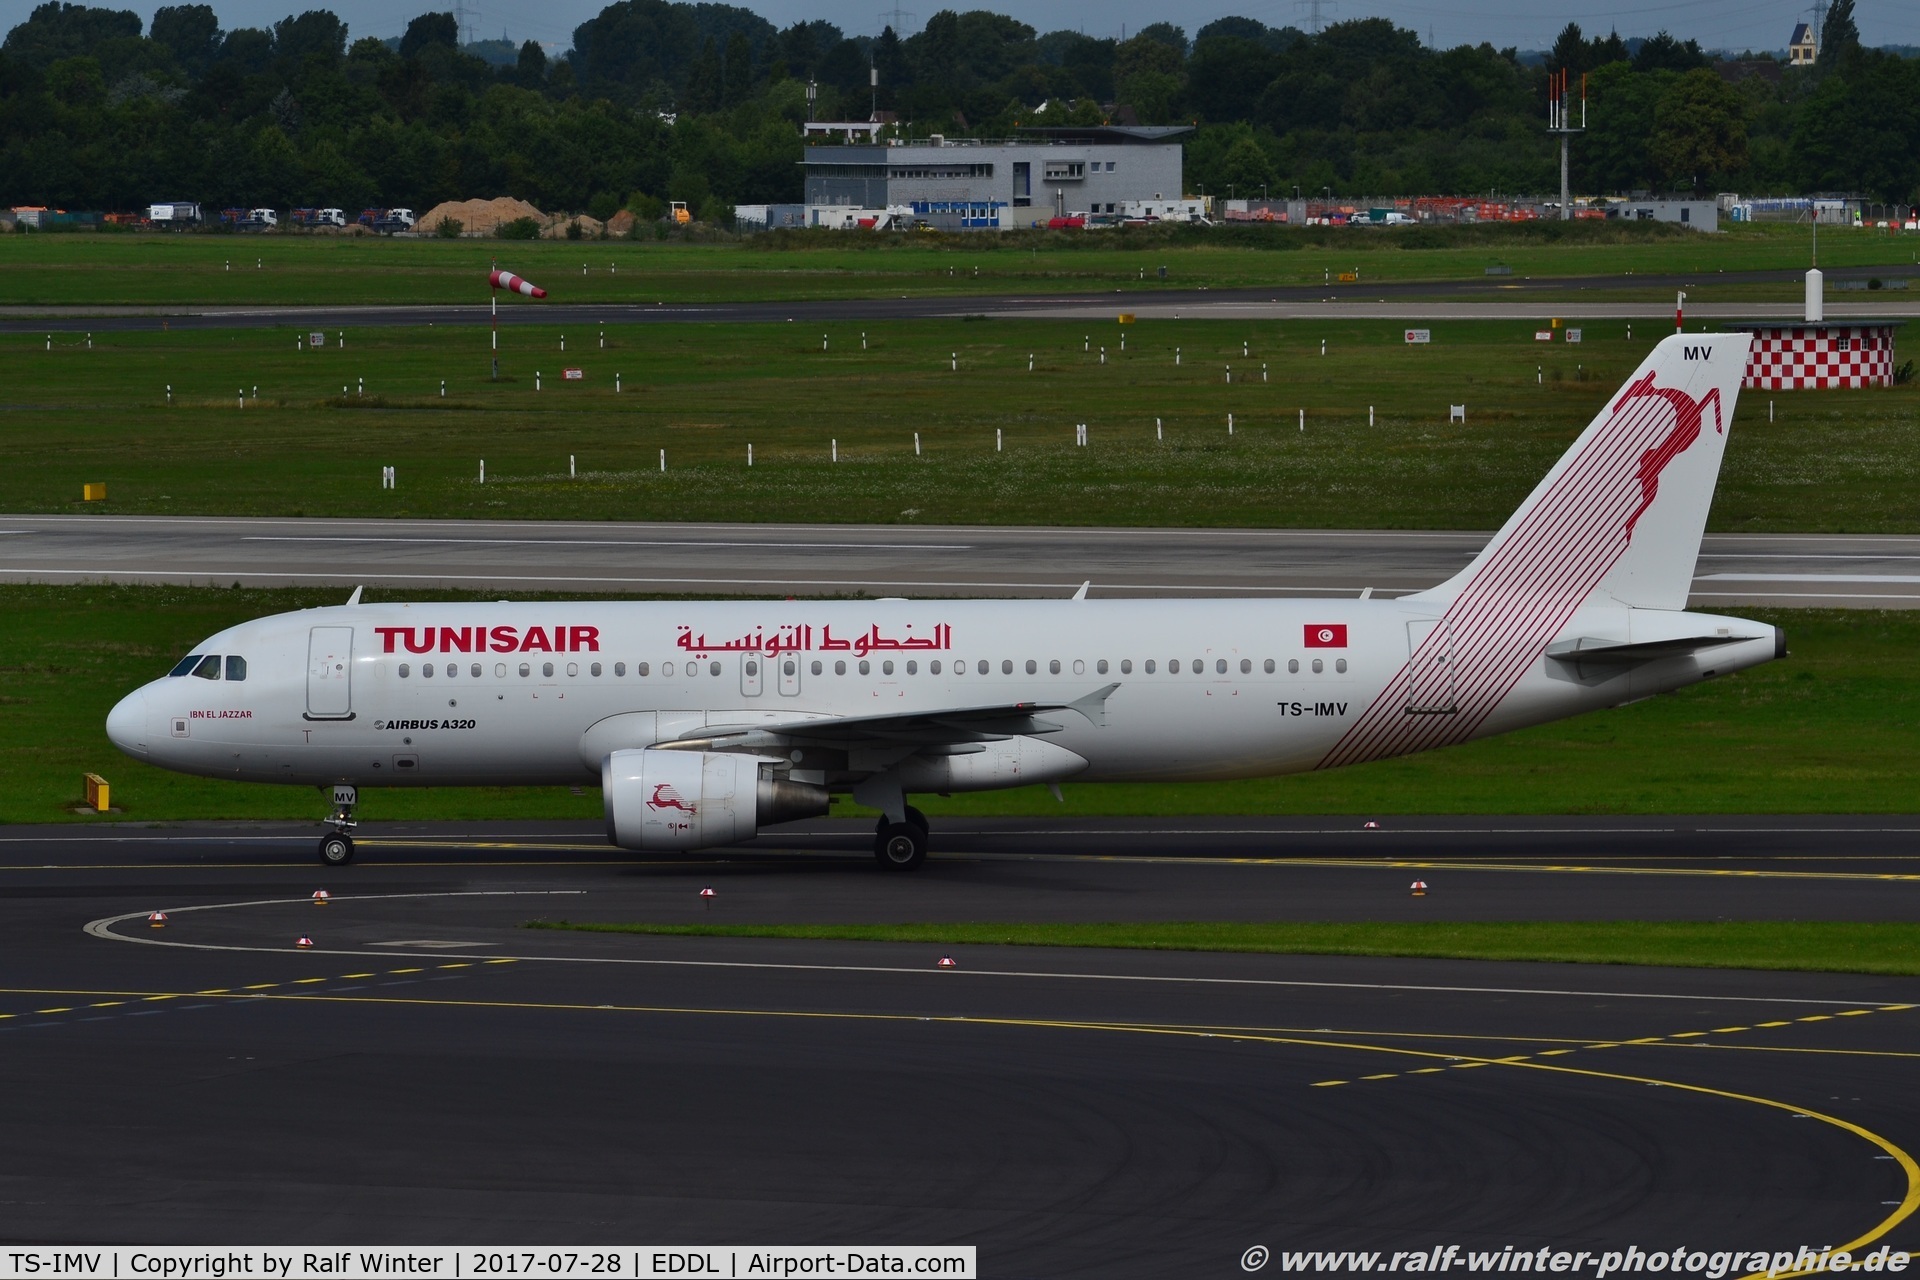 TS-IMV, 2013 Airbus A320-214 C/N 5610, Airbus A320-214 - TU TAR Tunisair 'Ibn El Jazzar' - 5610 - TS-IMV - 28.07.2017 - DUS